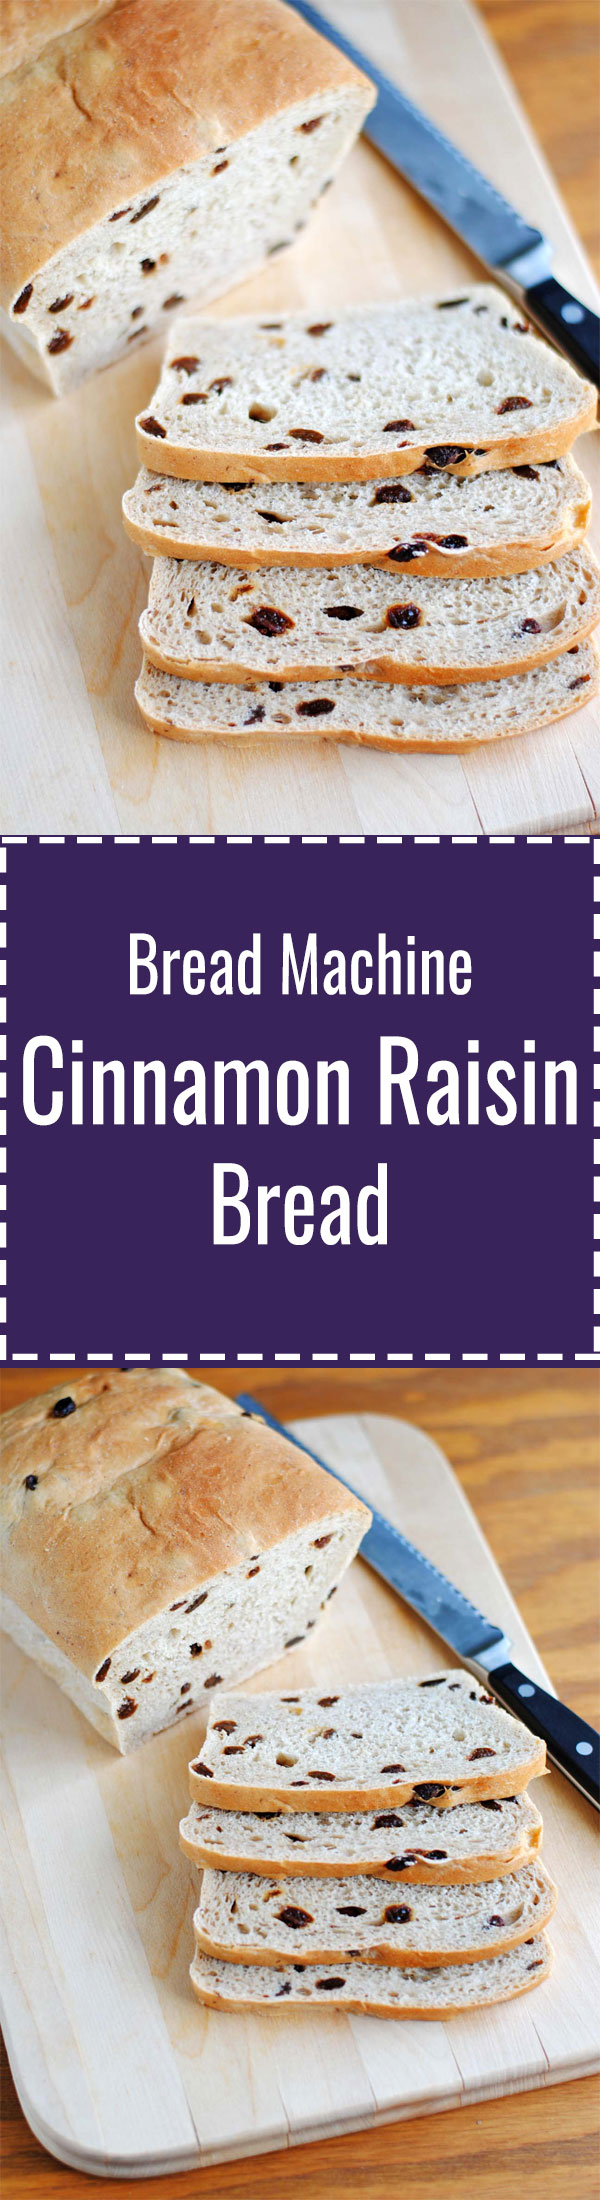 Bread Machine Cinnamon Raisin Bread